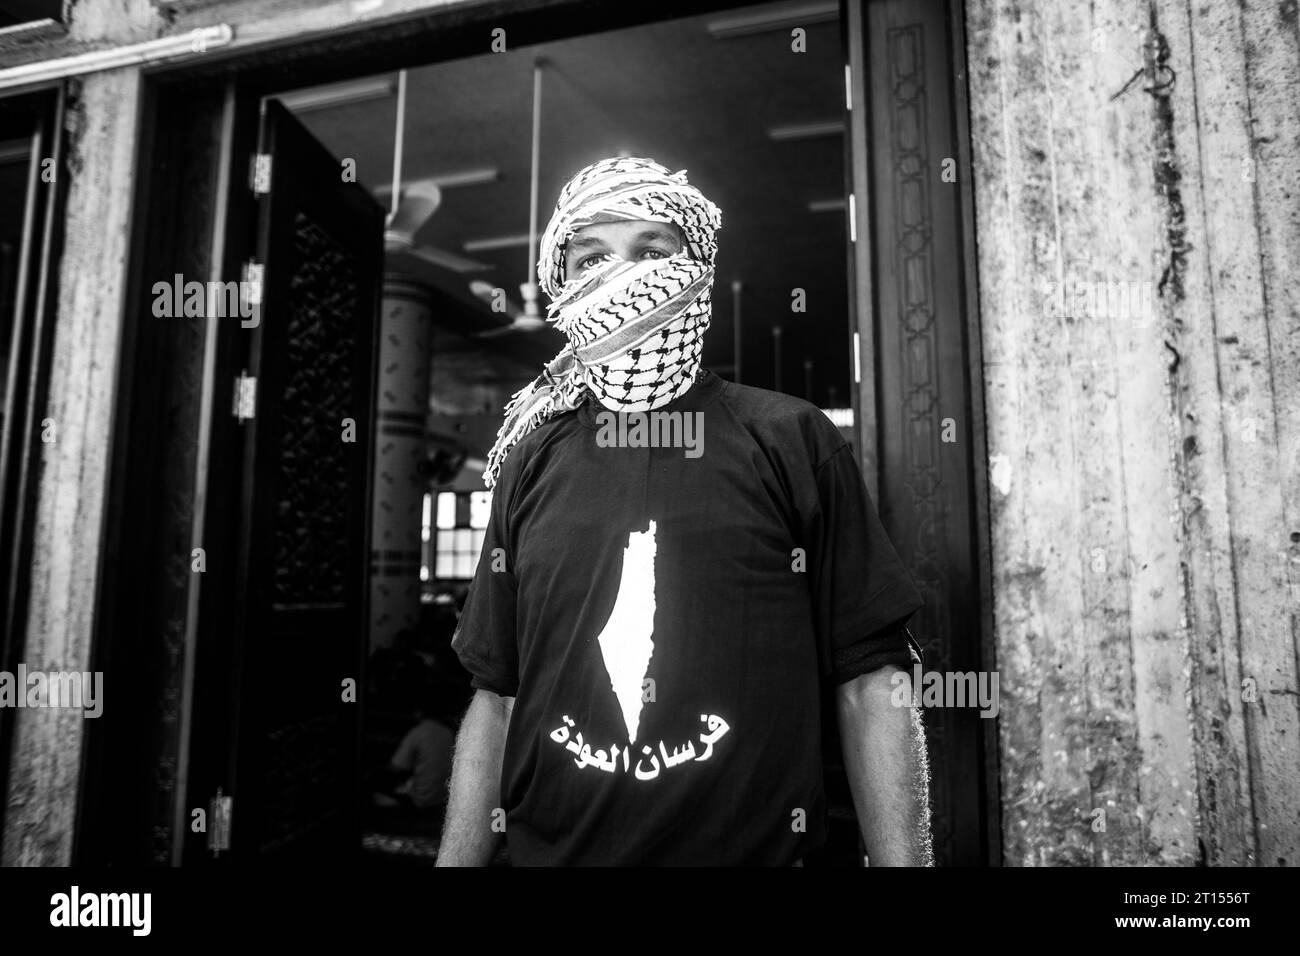 Michael Bunel / le Pictorium - Conflict in Gaza - 13/05/2018 - Palestina / Striscia di Gaza / Rafah - Un uomo posa per una foto con una mappa della palestina sulla sua maglietta durante il funerale di Jamal Affana (15) soccombe a una ferita da arma da fuoco durante le proteste di venerdì scorso alle la recinzione di confine di Gaza con Israele il 13 maggio 2018 a Rafah, Gaza. Jamal è stato ucciso venerdì da un cecchino israeliano mentre prendeva parte alle proteste. Per i 1,9 milioni di palestinesi che vivono nella Striscia di Gaza, la vita è diventata una lotta quotidiana per cibo, elettricità e denaro dopo 10 anni di blocco israeliano nella regione. I protes Foto Stock